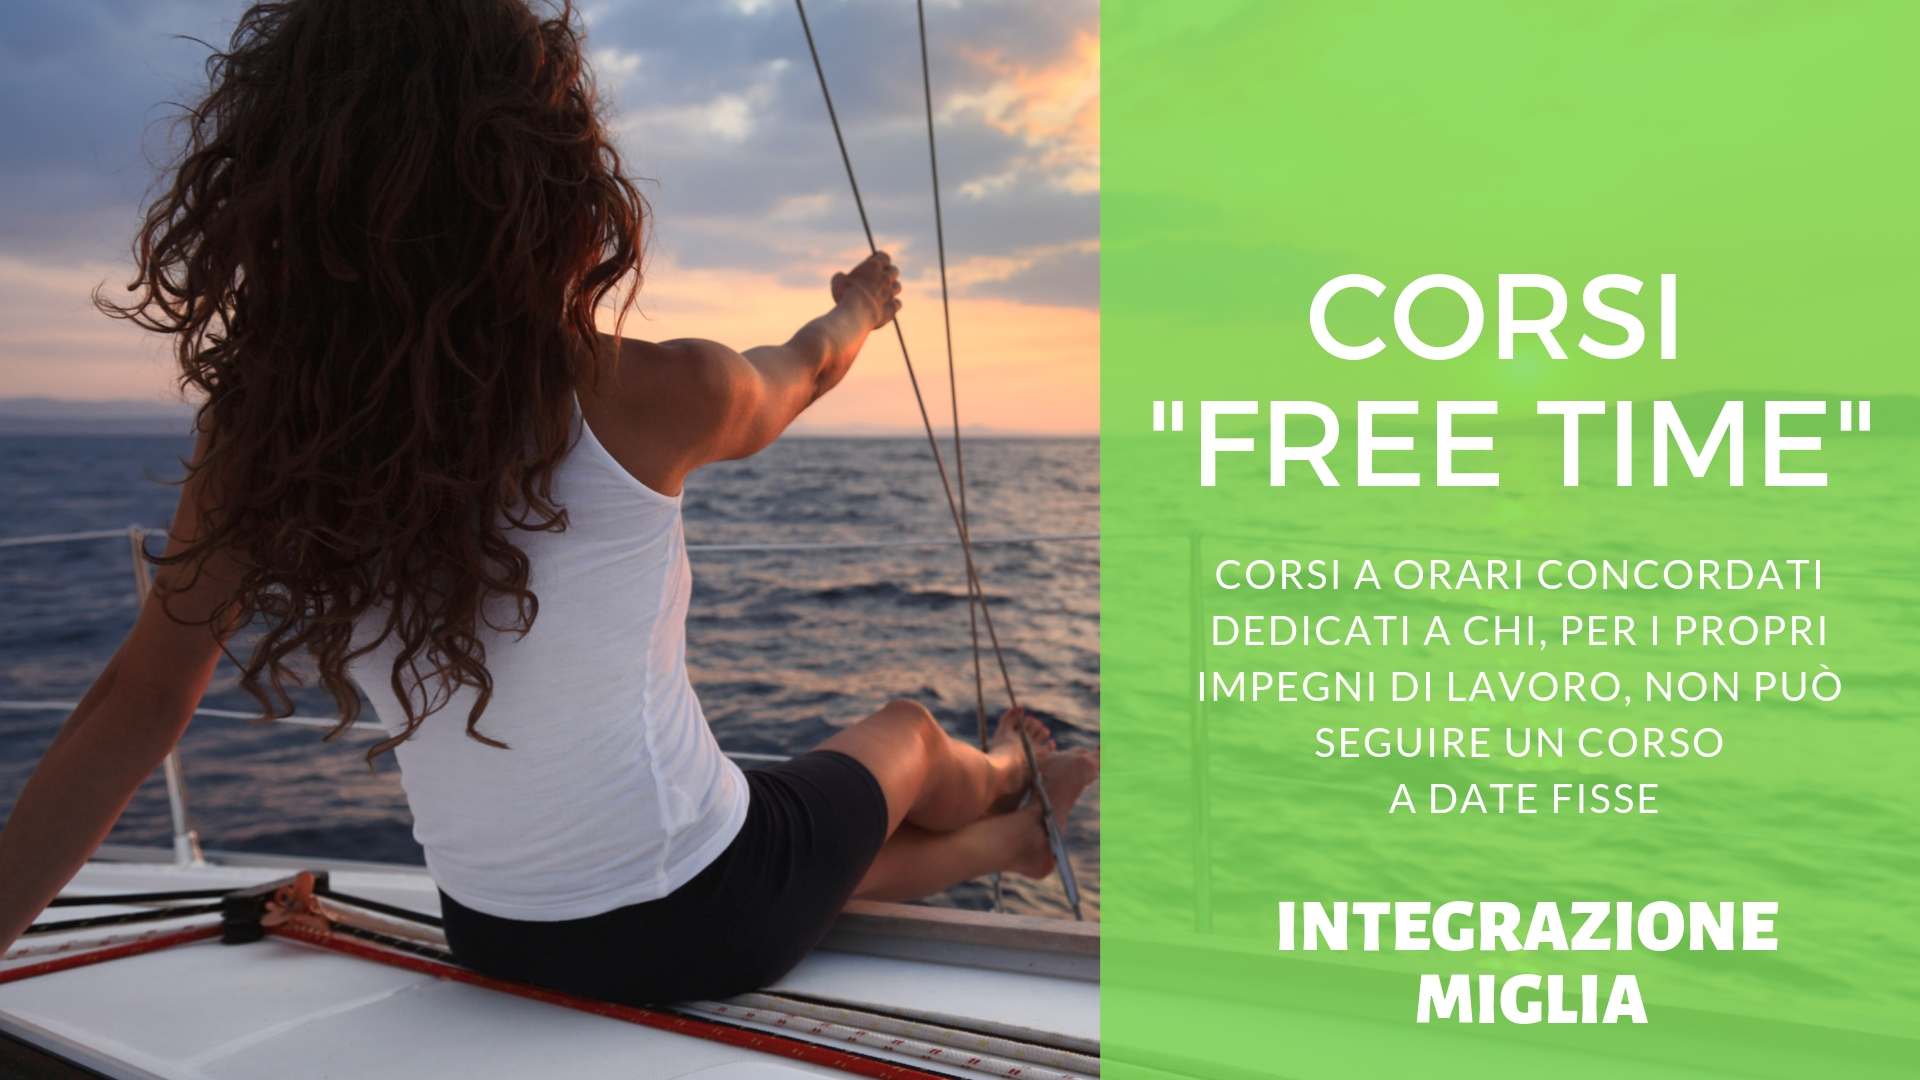 Scuola nautica Blu Oltremare Milano: CORSO FREE-TIME INTEGRAZIONE PATENTE NAUTICA DA ENTRO 12 MIGLIA A SENZA LIMITI